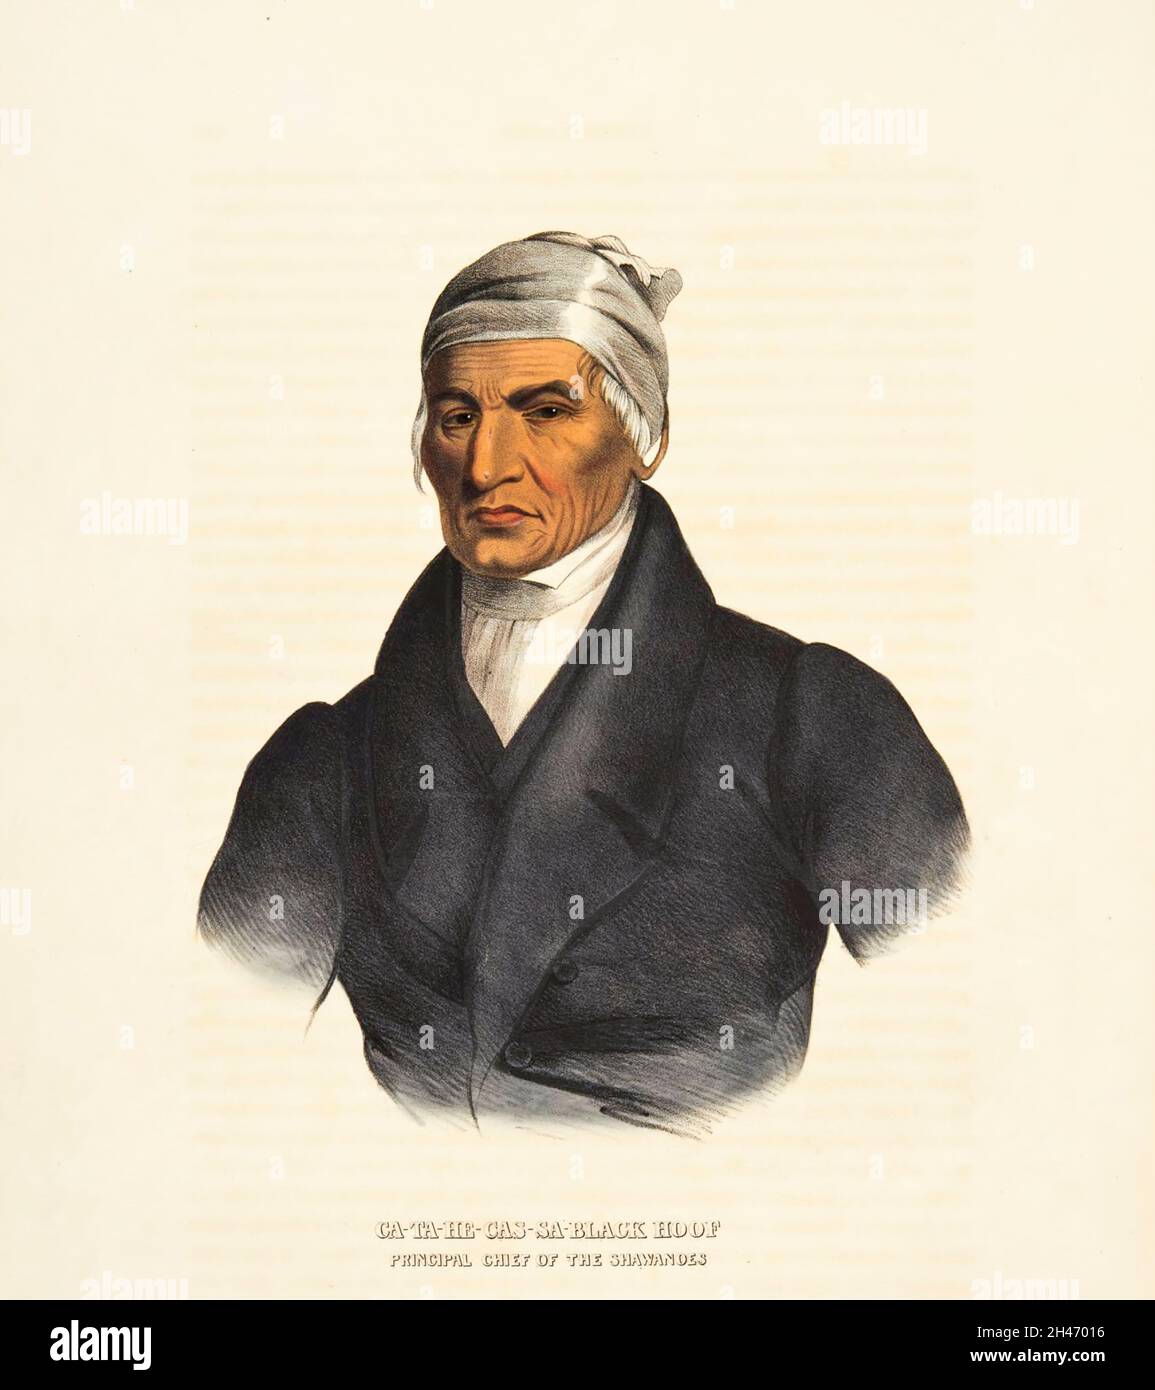 Catecahassa oder Black Hof (c. 1740-1831) war der Oberbürgerchef der Shawnee-Indianer im Ohio-Land der Vereinigten Staaten. Black Hoof, ein Mitglied der Mekoche-Division der Shawnees, wurde während der frühen Kriege zwischen den Shawnee und den eindringenden amerikanischen Siedlern als ein heftiger Krieger bekannt. Black Hoof behauptete, bei der Schlacht am Monongahela im Jahr 1755 anwesend gewesen zu sein, als General Edward Braddock während des Französisch- und Indischen Krieges besiegt wurde, obwohl es keine zeitgenössischen Beweise dafür gibt, dass Shawnees an dieser Schlacht teilgenommen hat Stockfoto